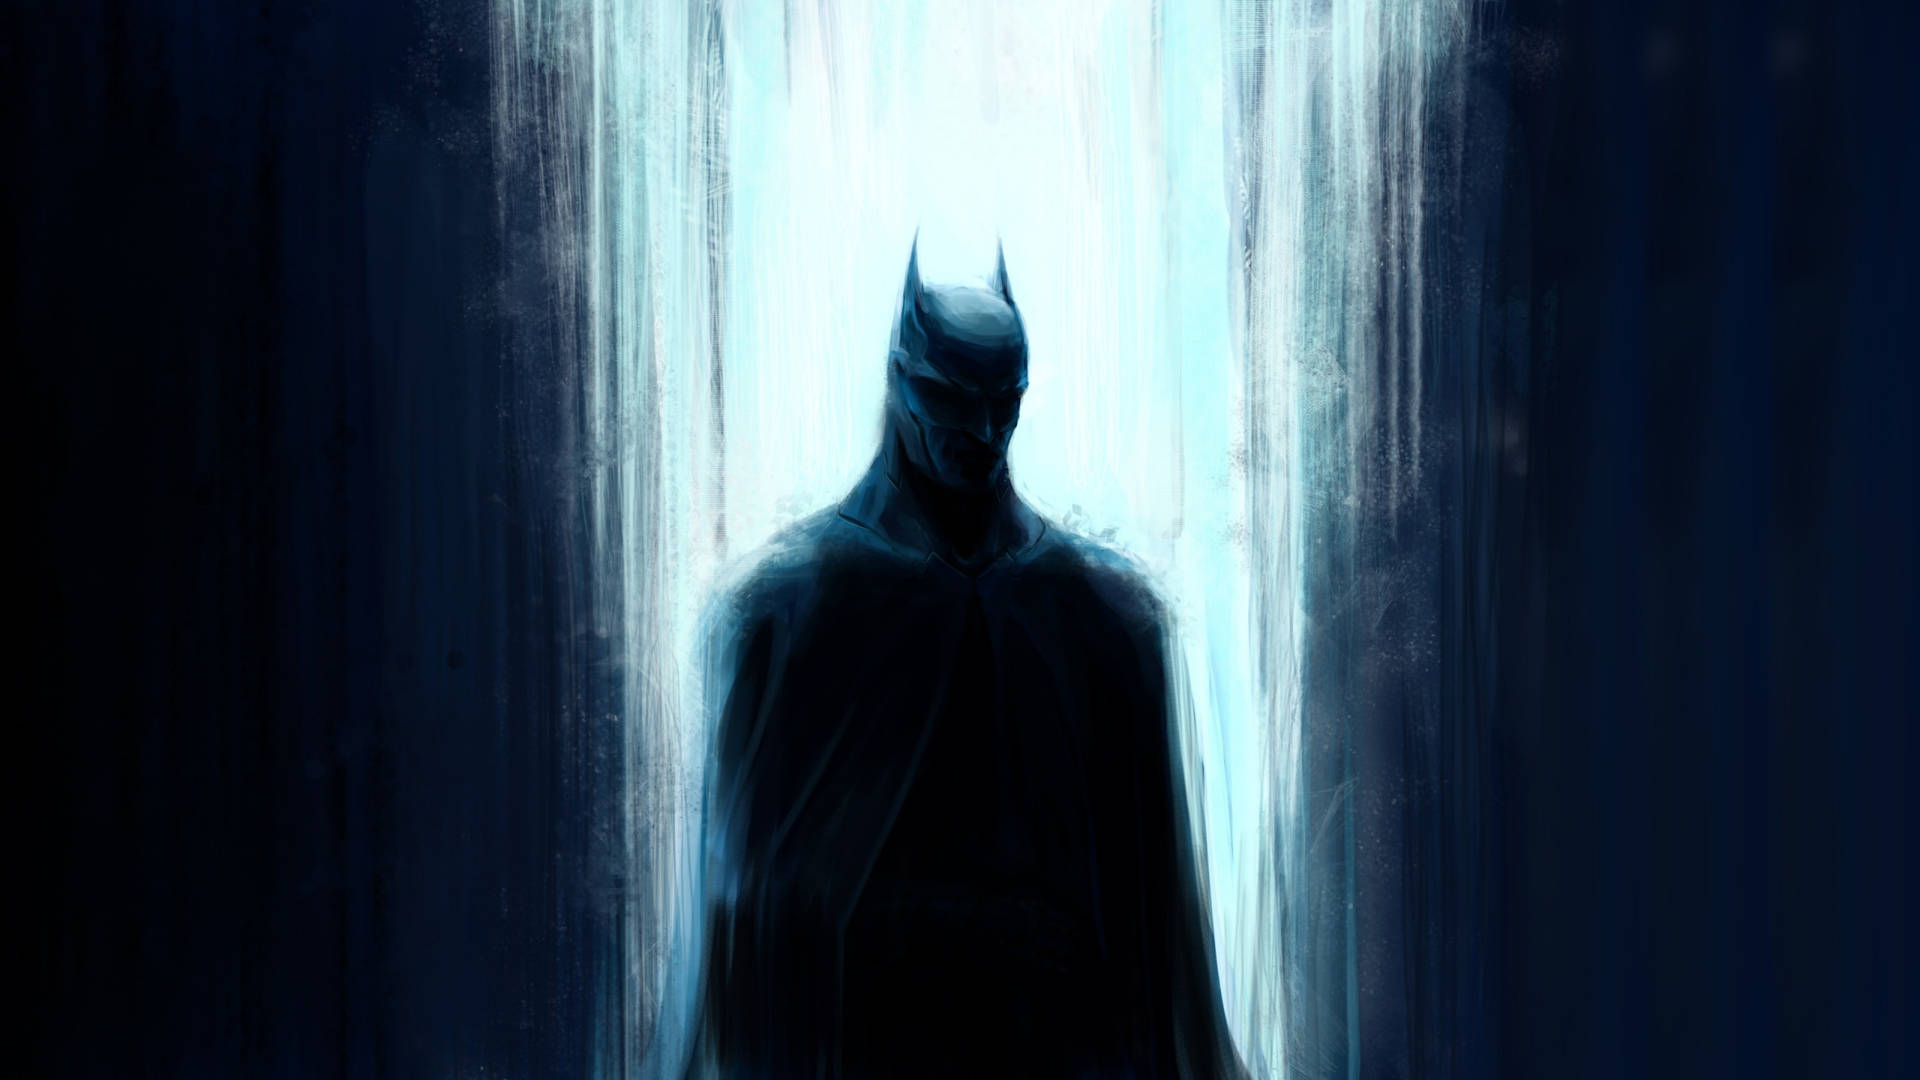 Et intens kig fra Batman. Wallpaper